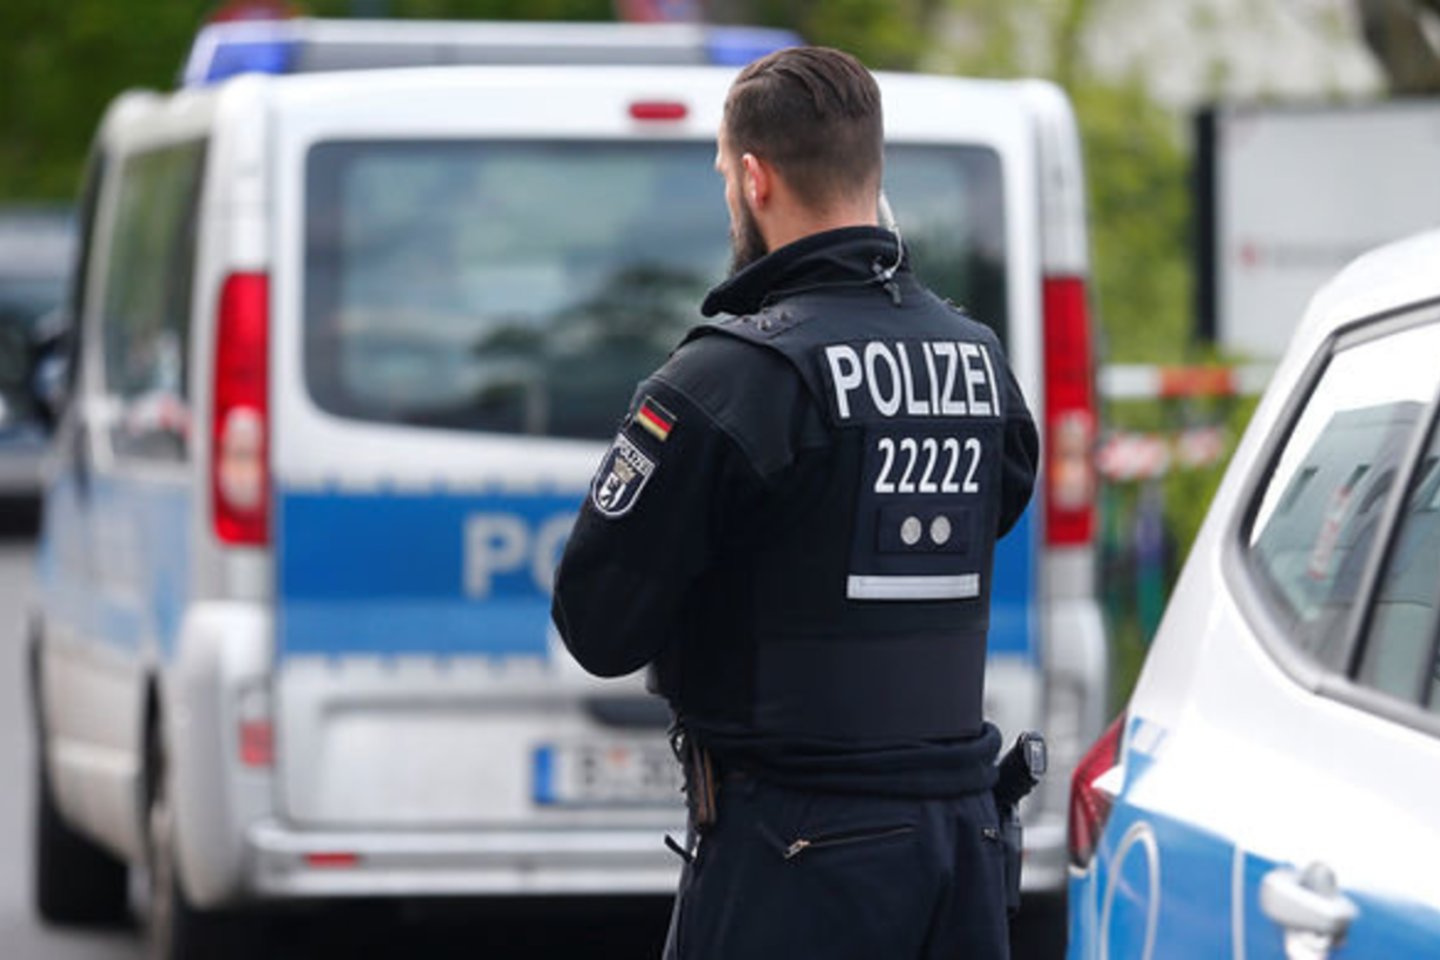  Vokietijos policija, nagrinėjanti galimos kibernetinės atakos incidentą, kai internete buvo paviešinta šimtų politikų, įskaitant kanclerę Angelą Merkel, asmeninės informacijos, antradienį pranešė suėmusi vieną 20-metį įtariamąjį.<br>Reuters nuotr.